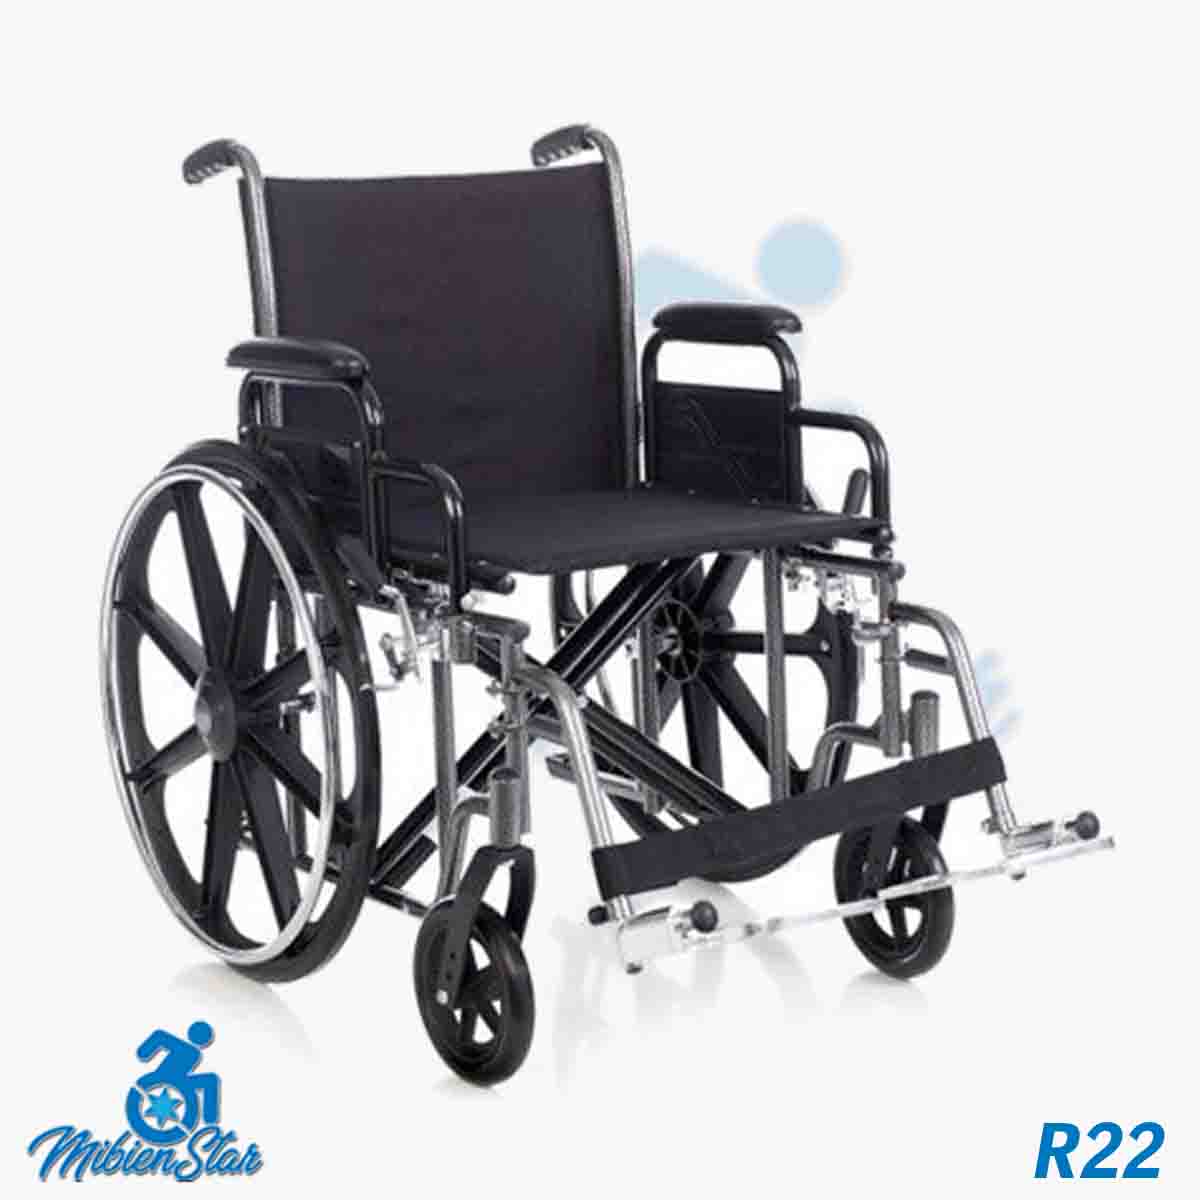 Alquiler de silla de ruedas sin frenos en manillas para anciano o movilidad reducida o minusválido en Las Palmas de Gran Canaria con posibilidad de opción a compra con MibienStar